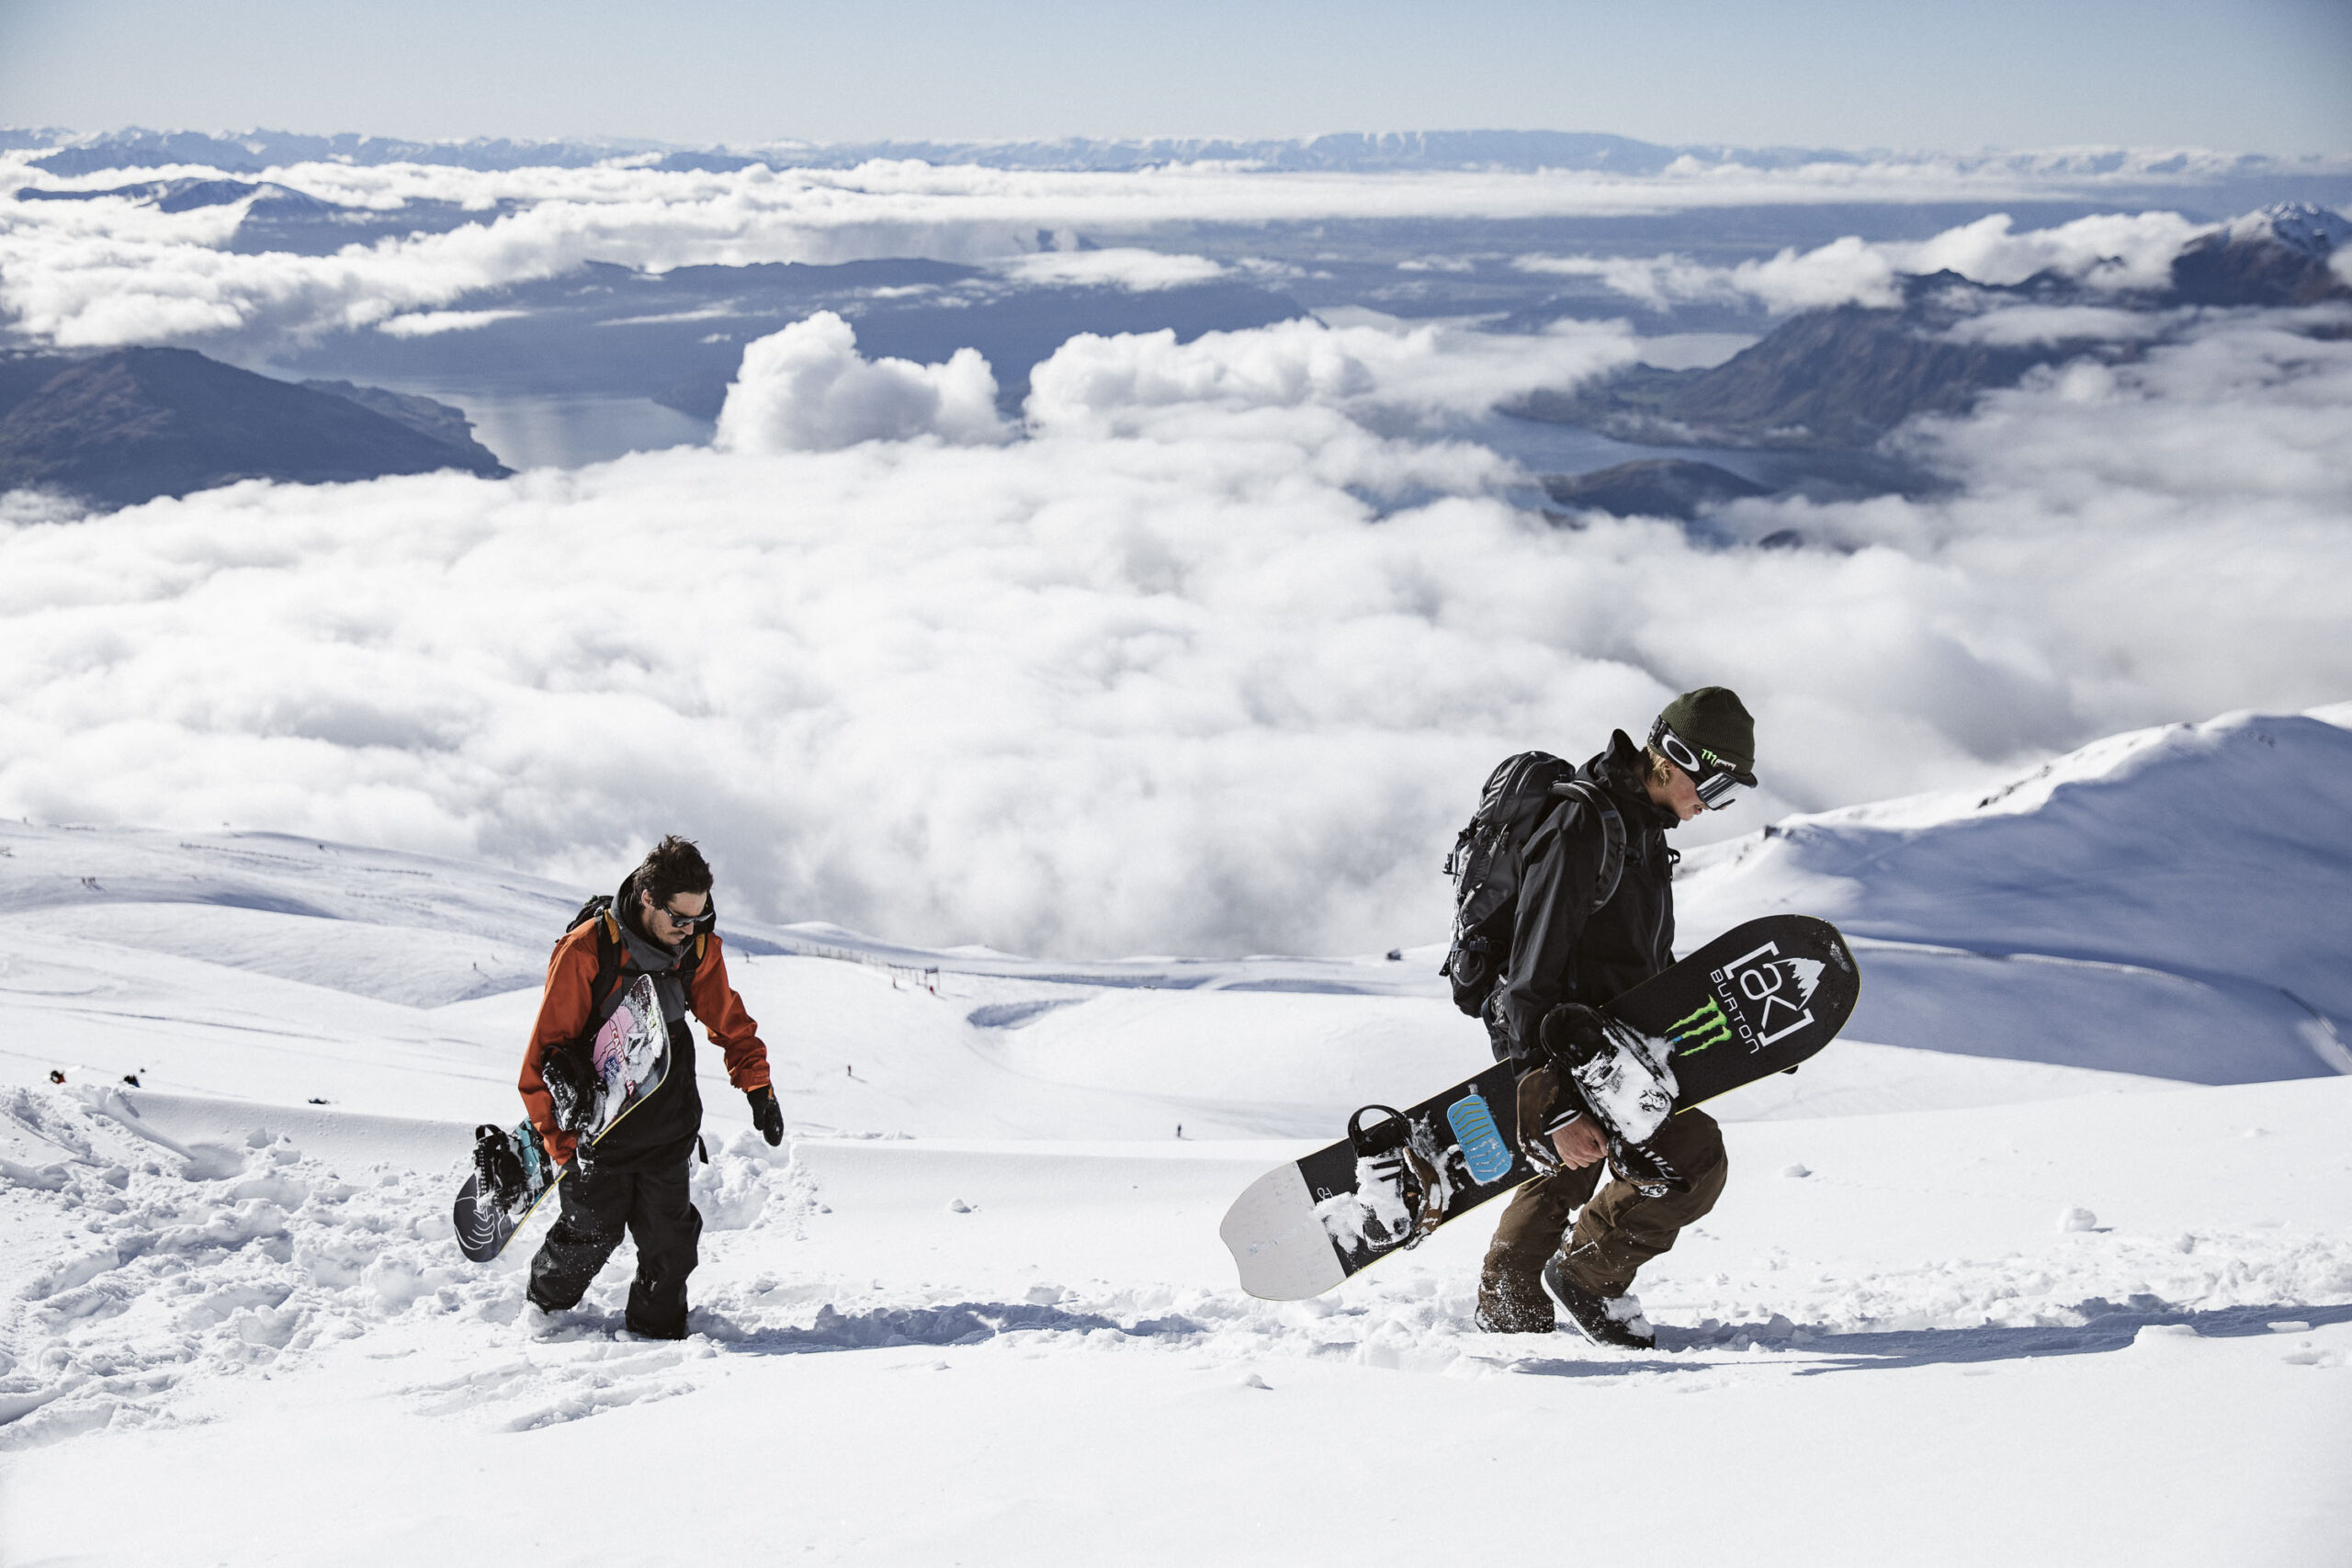 Will J & Carlos Snowboard NZ